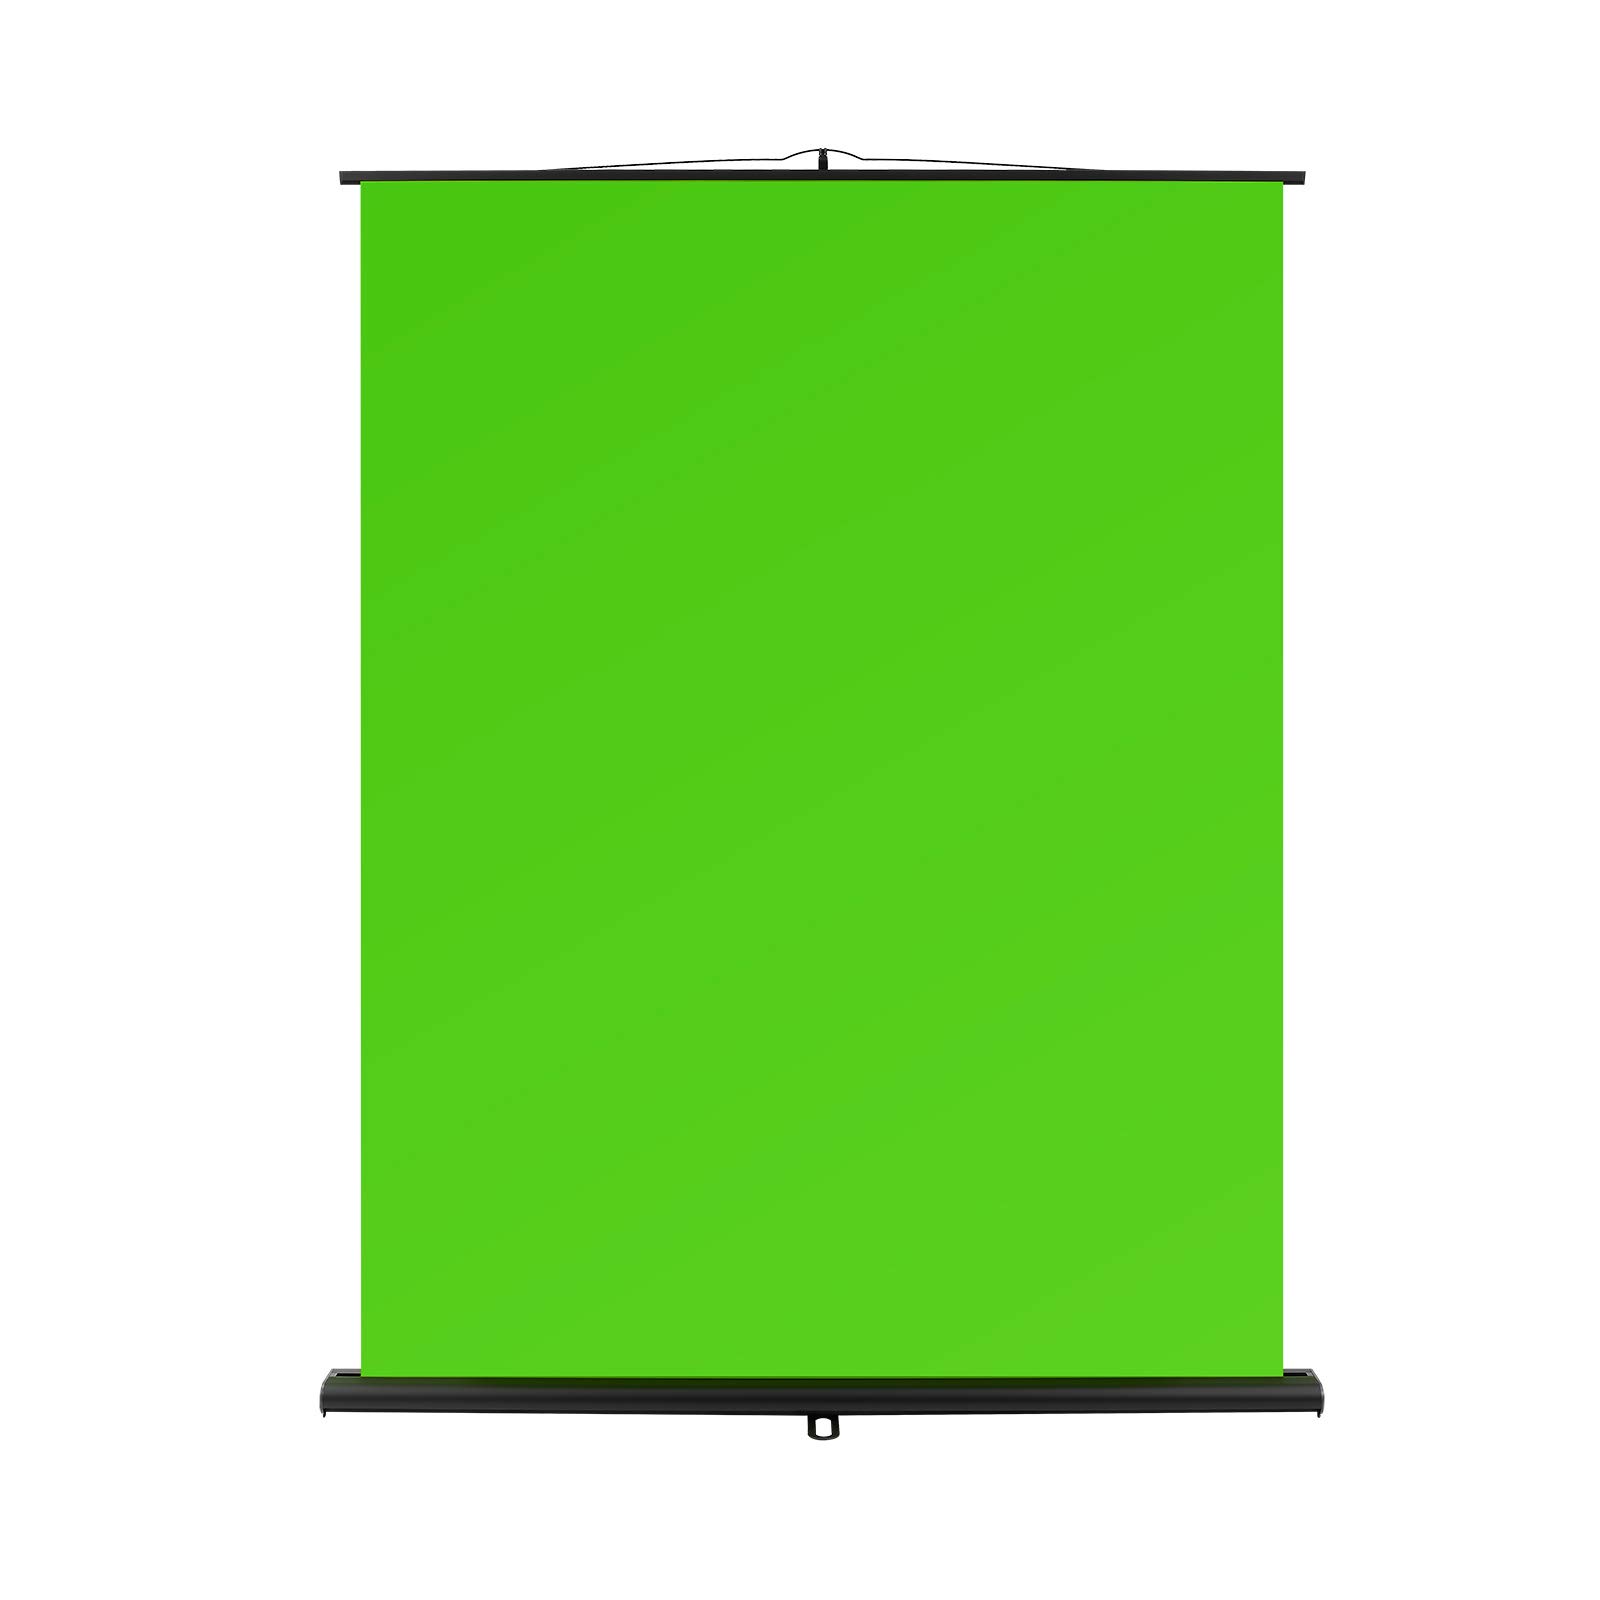 Một tấm vải xanh lá cây xanh sẽ là lựa chọn tốt nhất để các nhà sản xuất video tạo ra những bối cảnh sống động và hấp dẫn. Tấm phông xanh lá cây giúp bạn chỉnh sửa bất kỳ hình ảnh nào với chủ đề hoặc bối cảnh khác nhau mà bạn muốn.